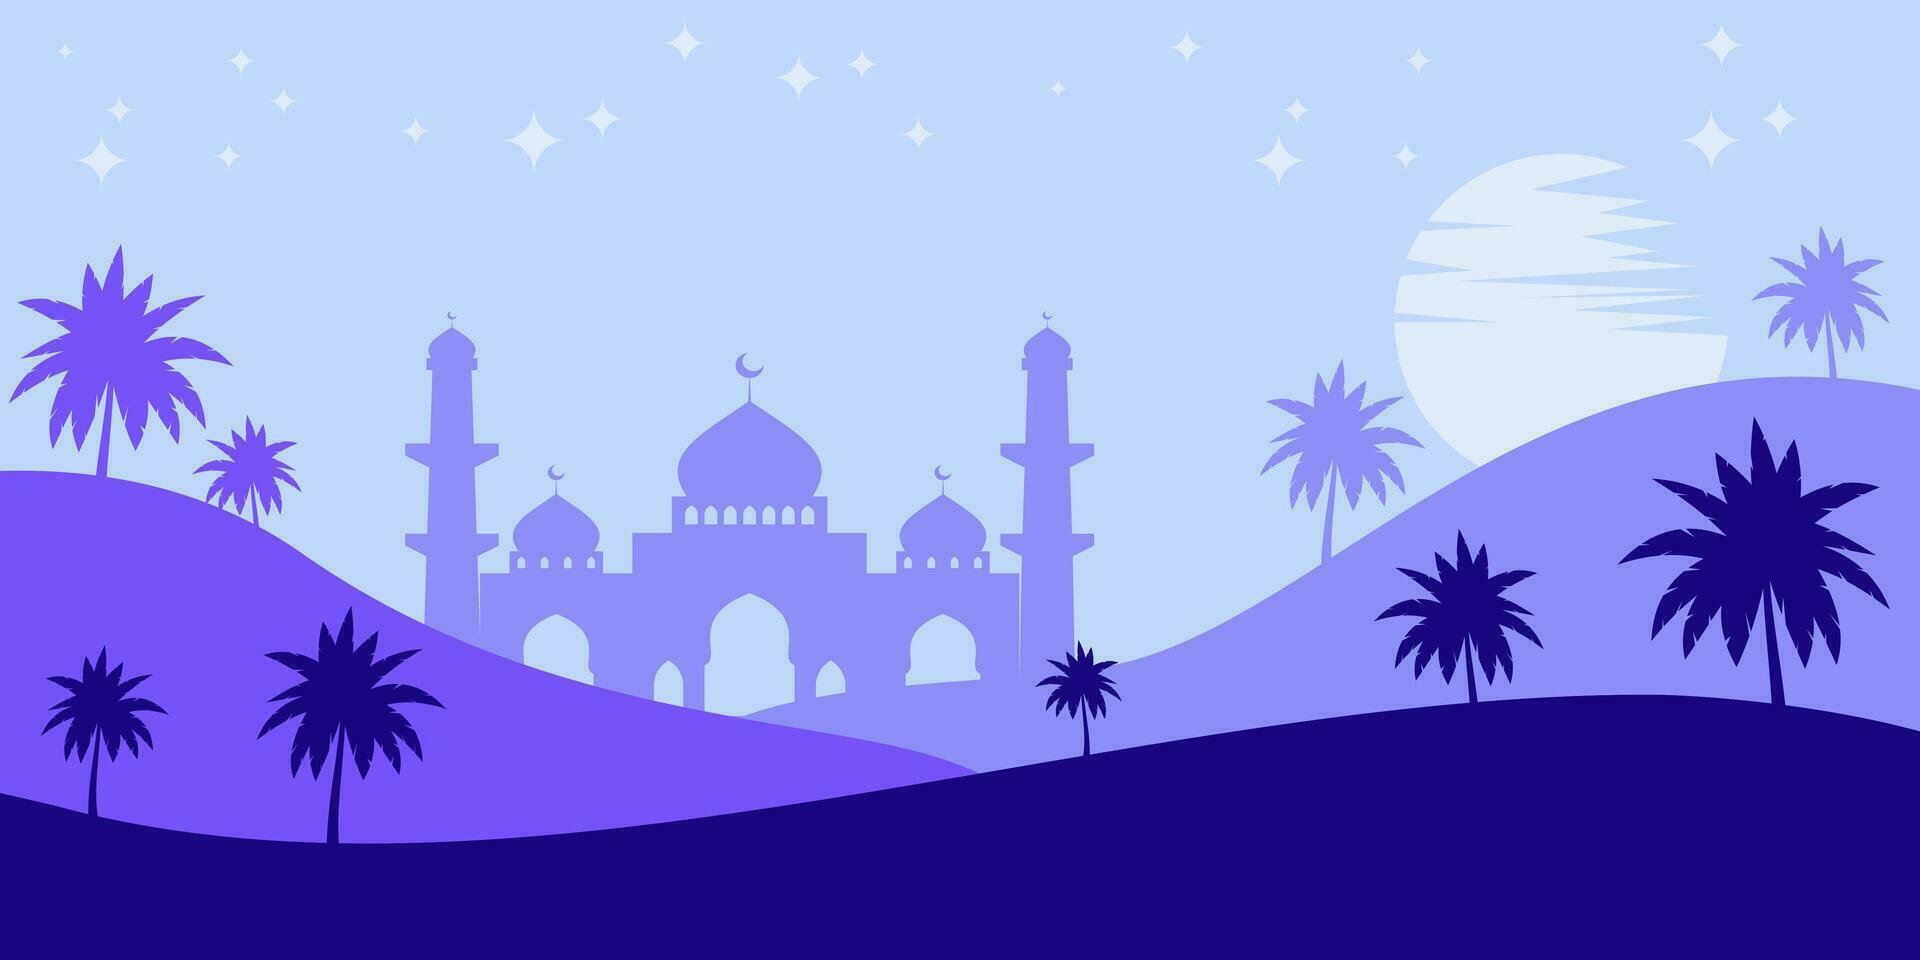 islamisch Blau Hintergrund mit Silhouetten von Berge, Moschee, Kokosnuss Bäume, Mond und Sterne. Vektor Vorlage zum Banner, Gruß Karte, Sozial Medien, Poster zum islamisch Feiertage, eid al-fitr, Ramadan